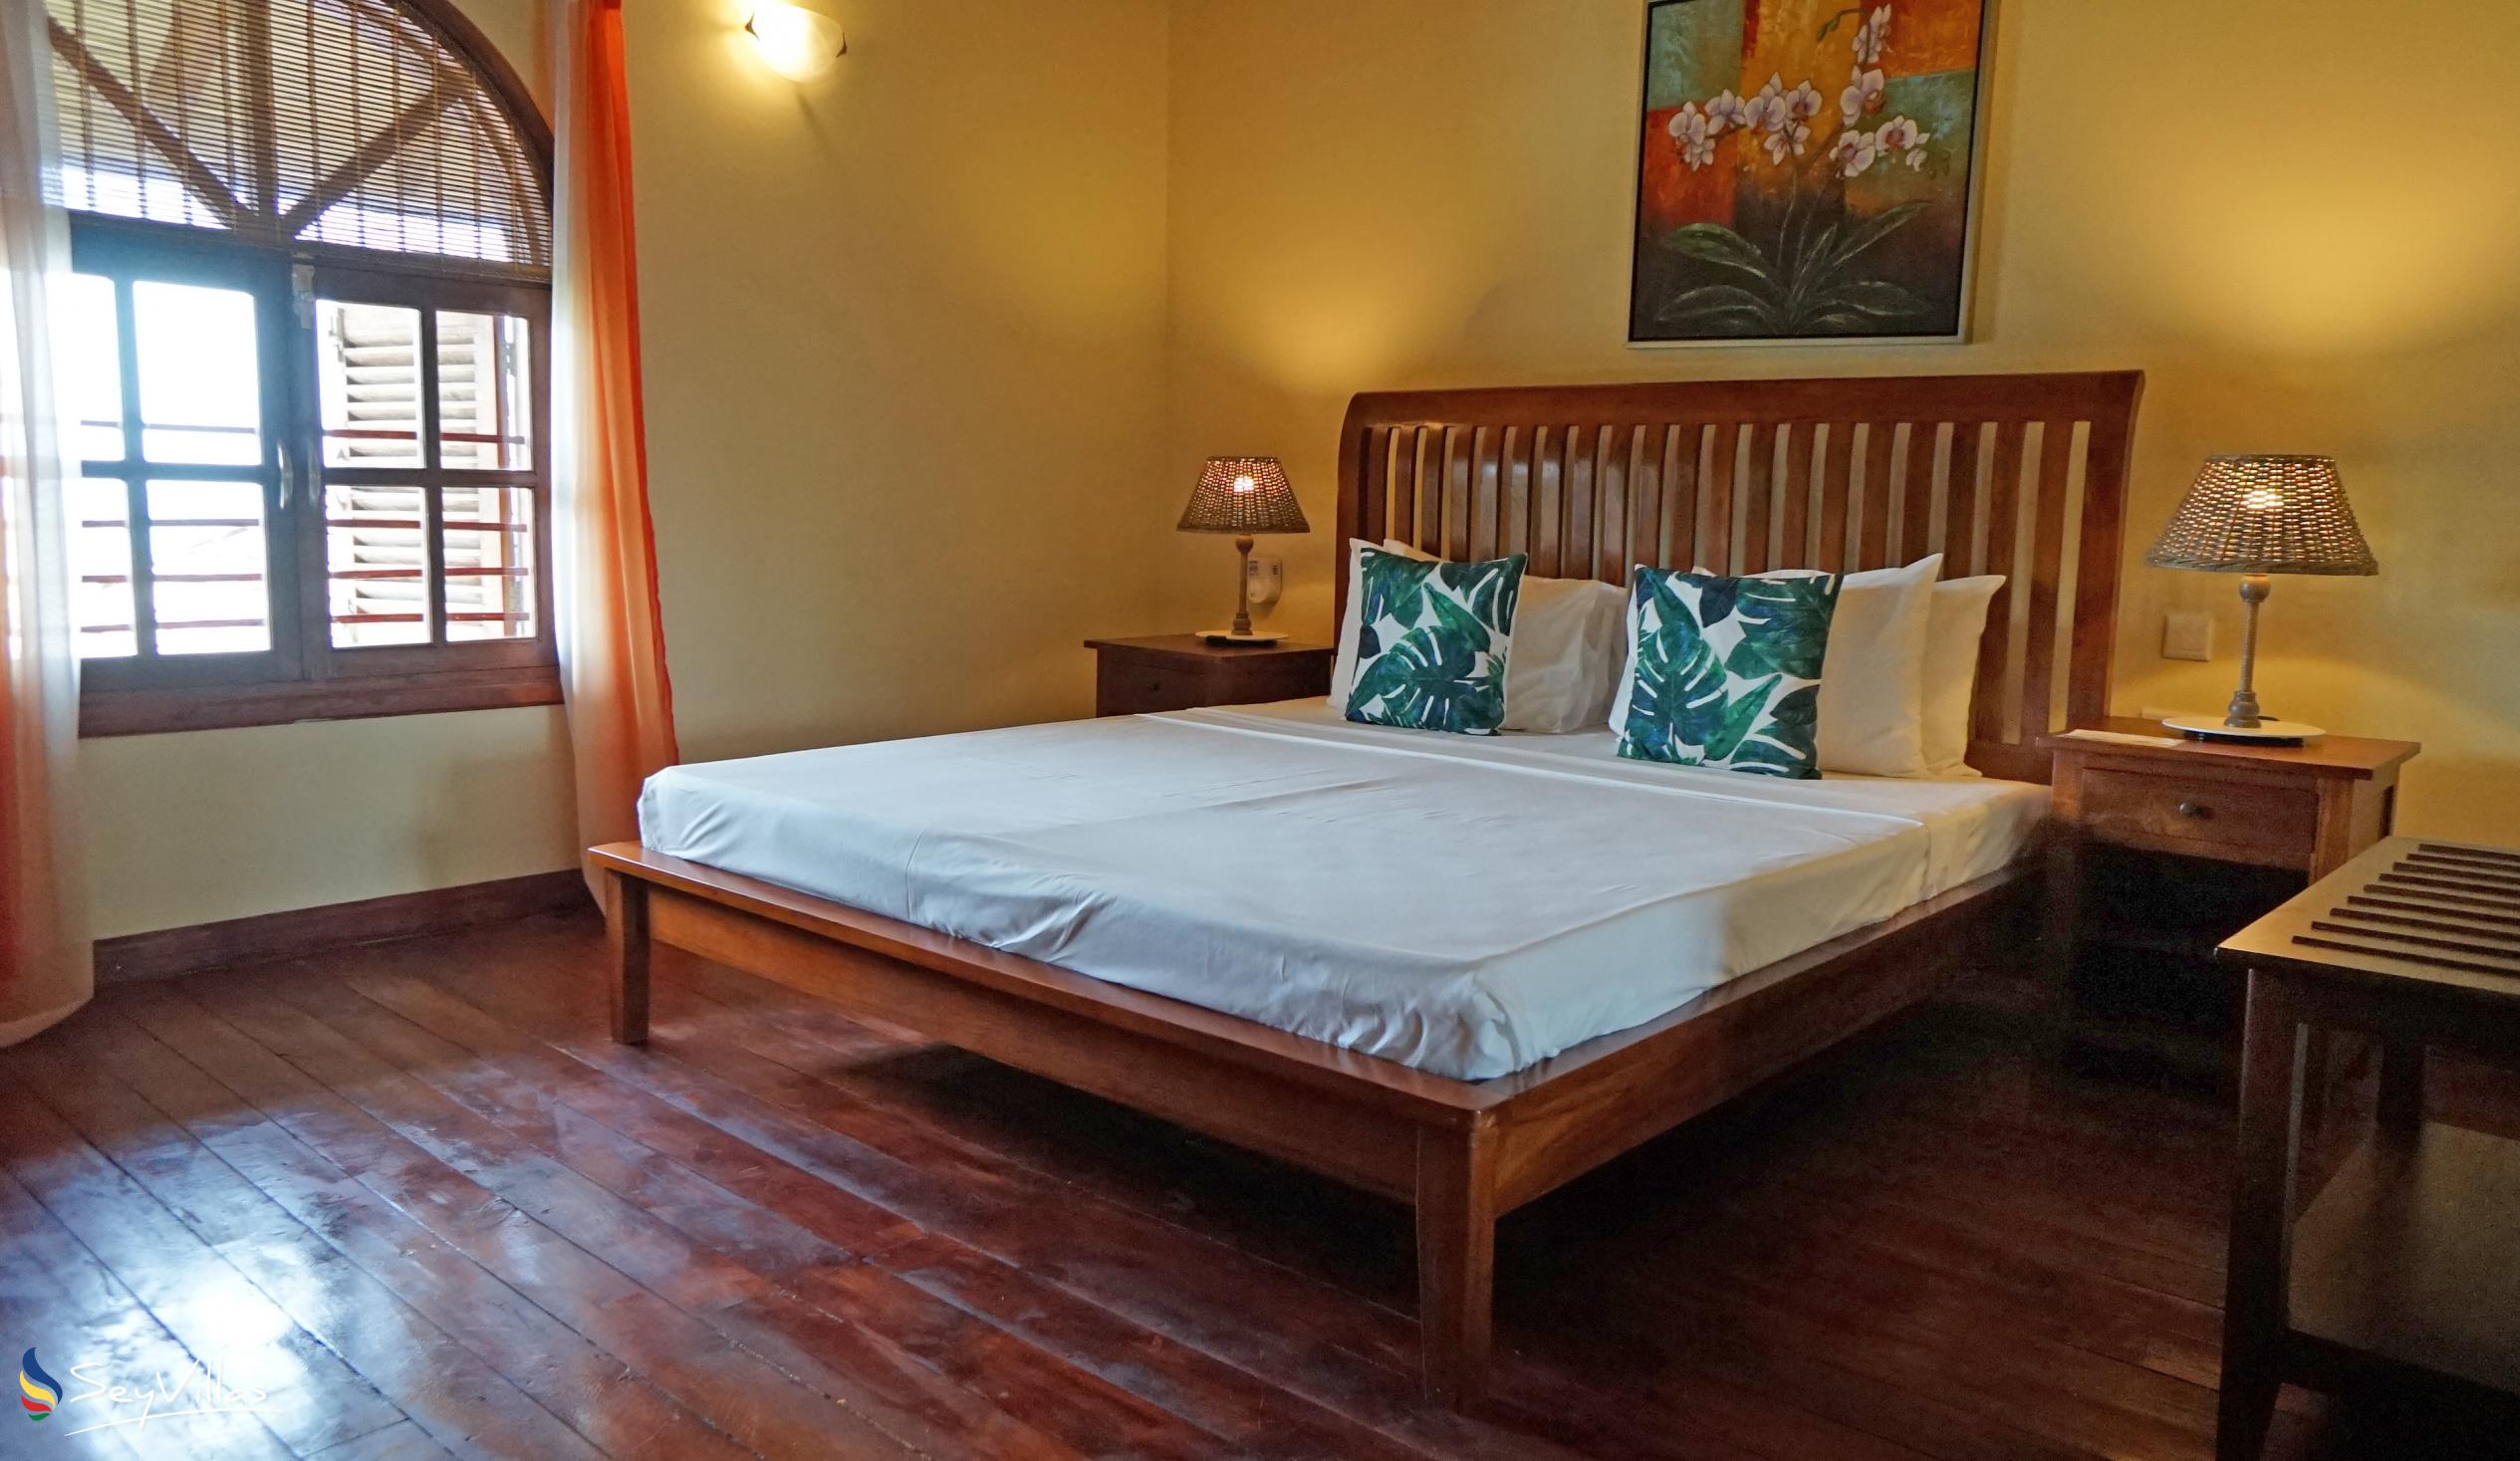 Foto 21: Castello Beach Hotel - Maxi Suite Familiare - Praslin (Seychelles)